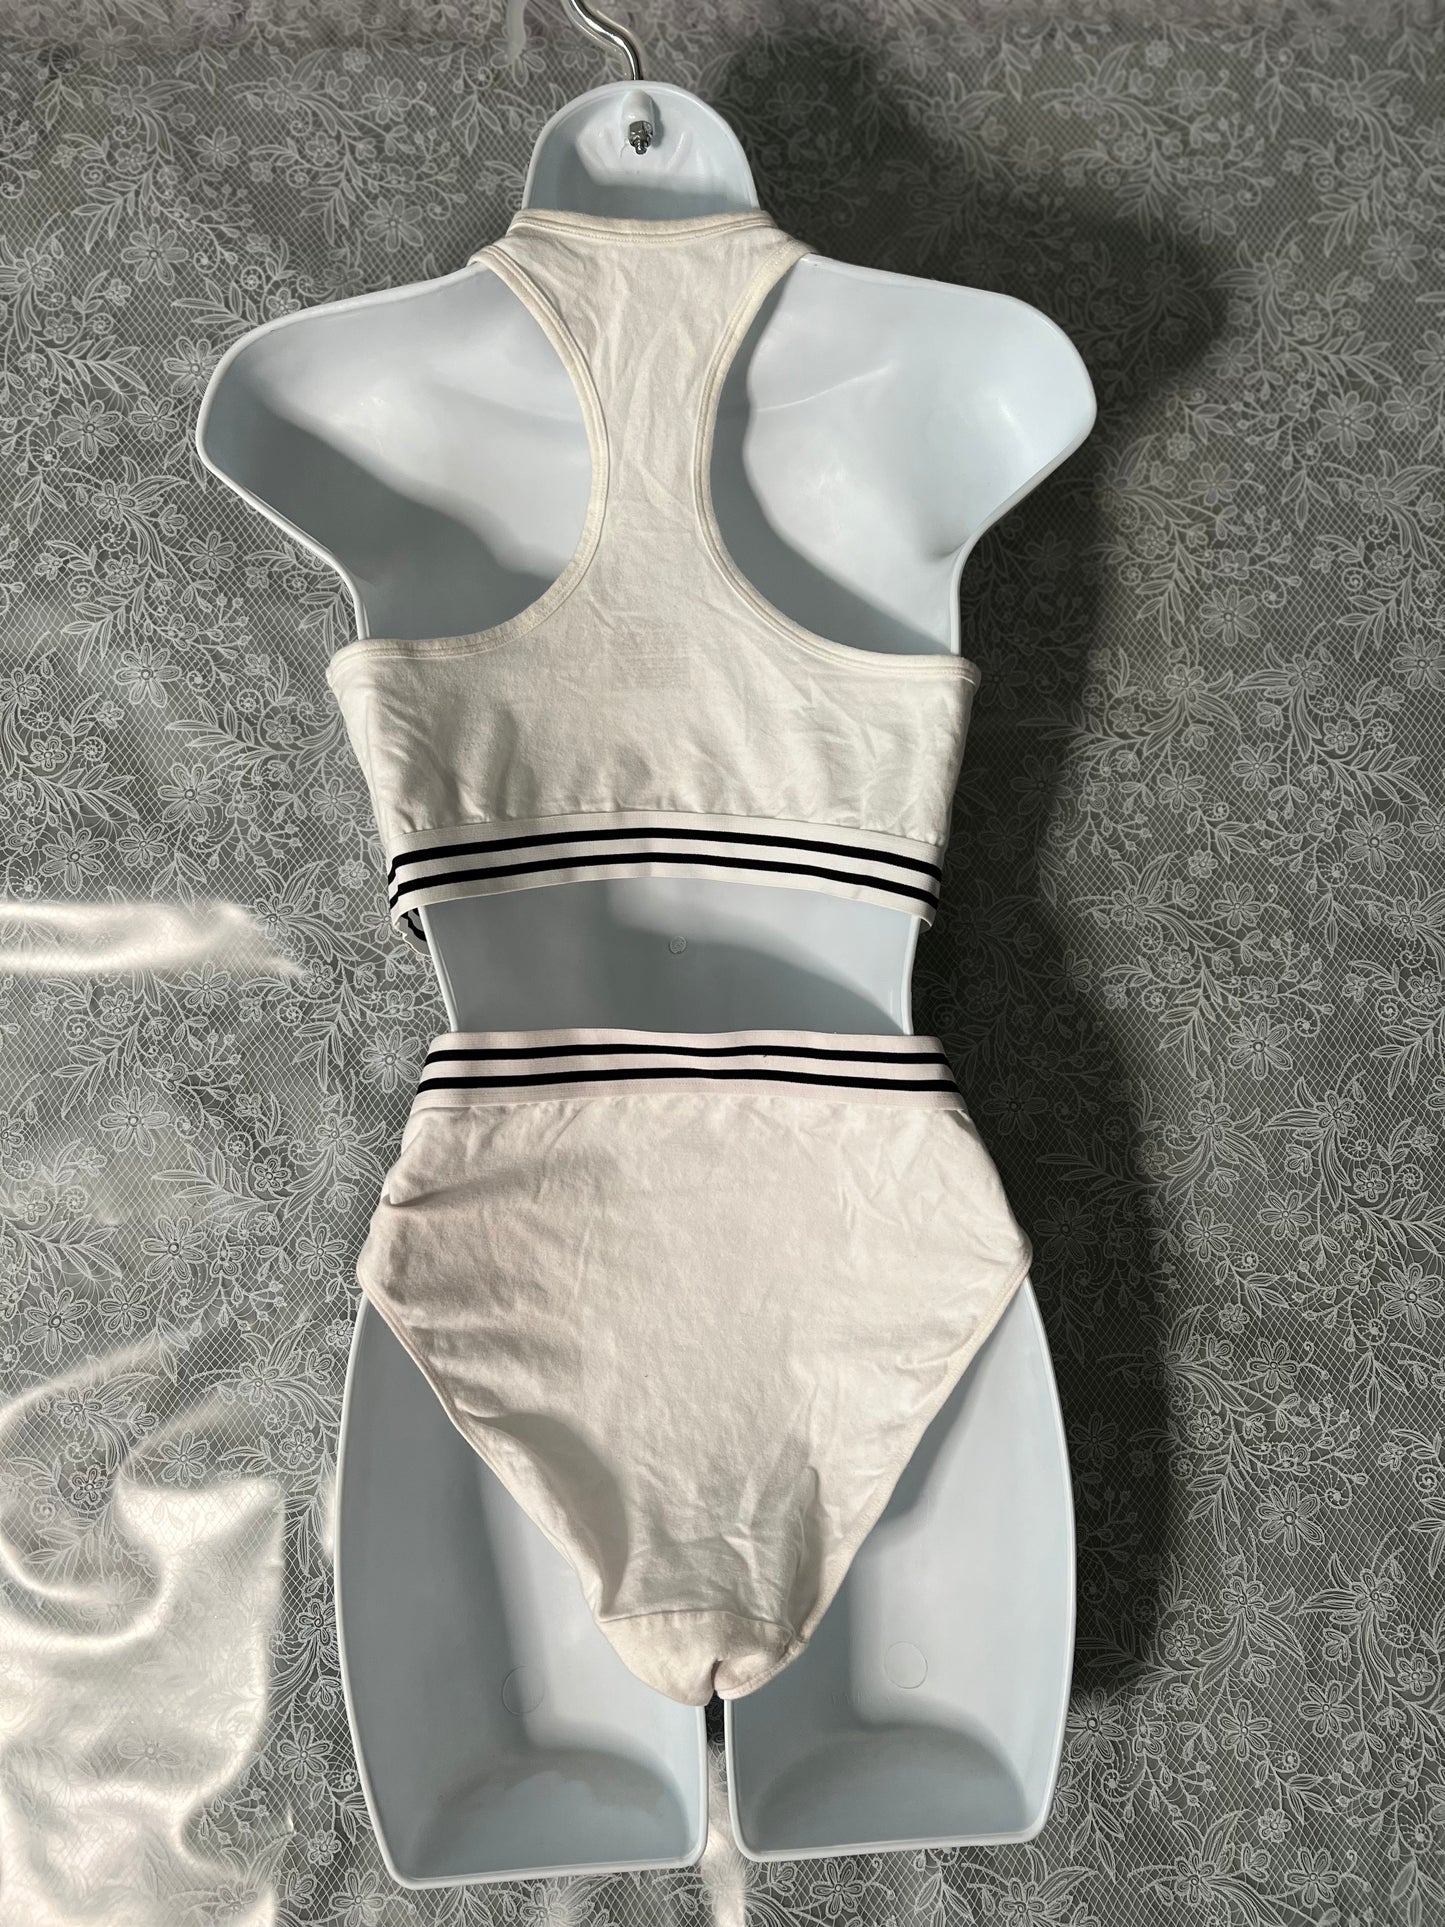 Colsie - Bra Underwear Set